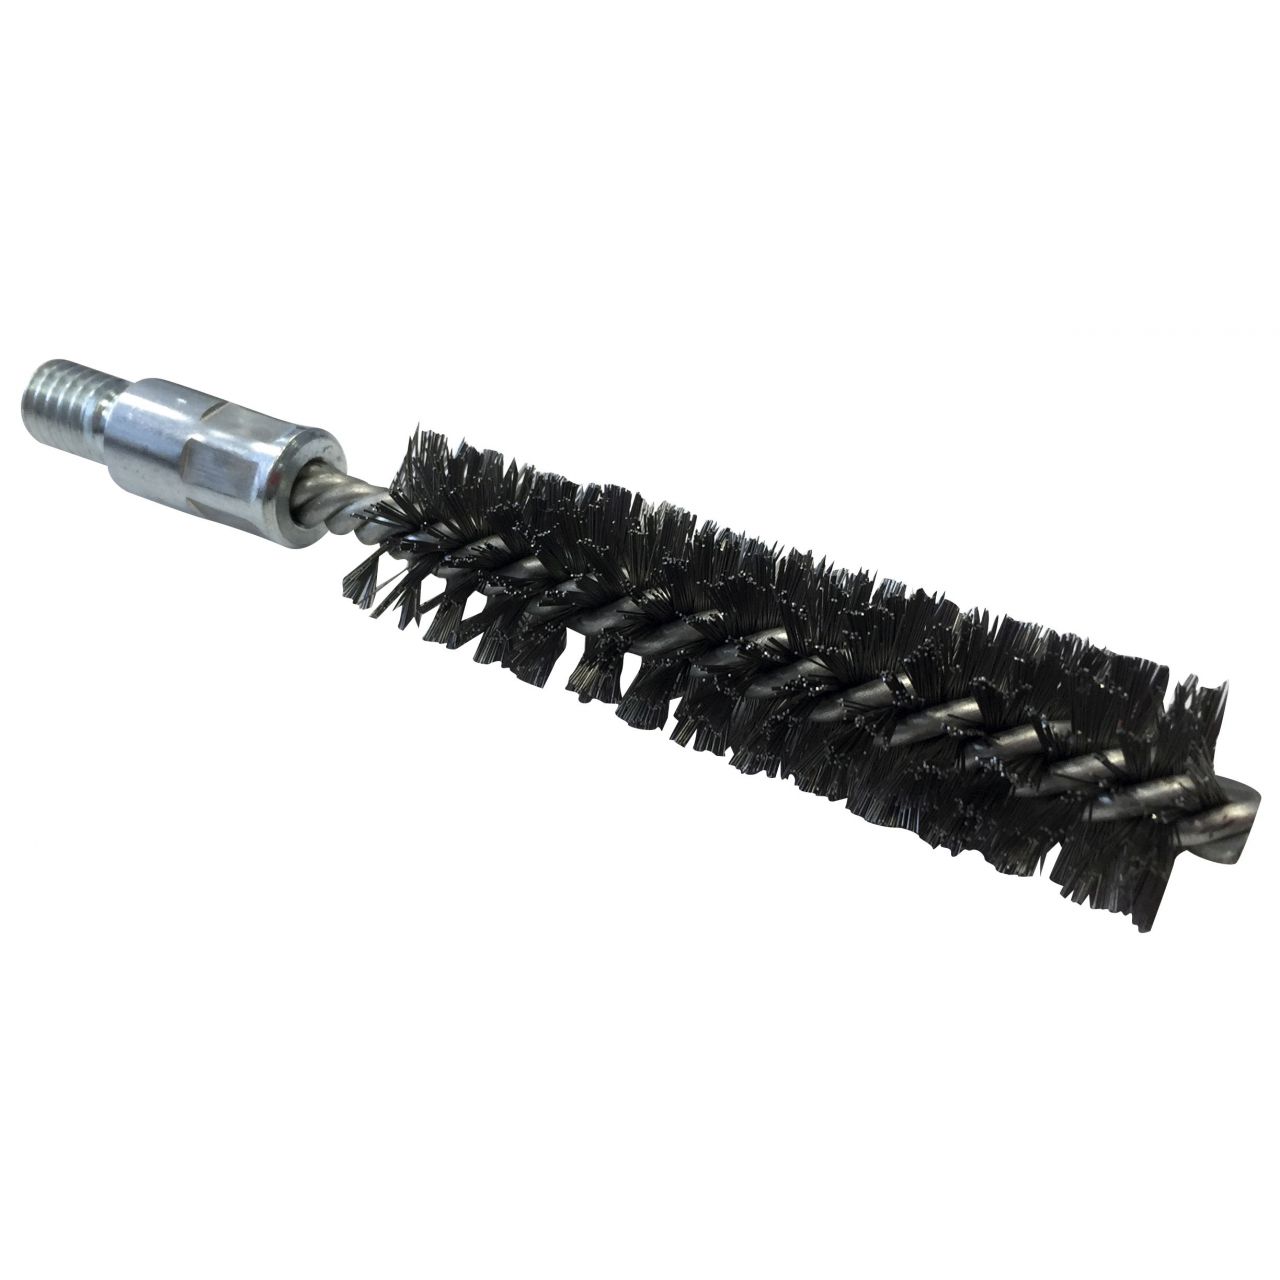 Cepillo limpiatubos de acero con rosca 1/2”BSW Ø 30 mm (100x160x0.3 mm)